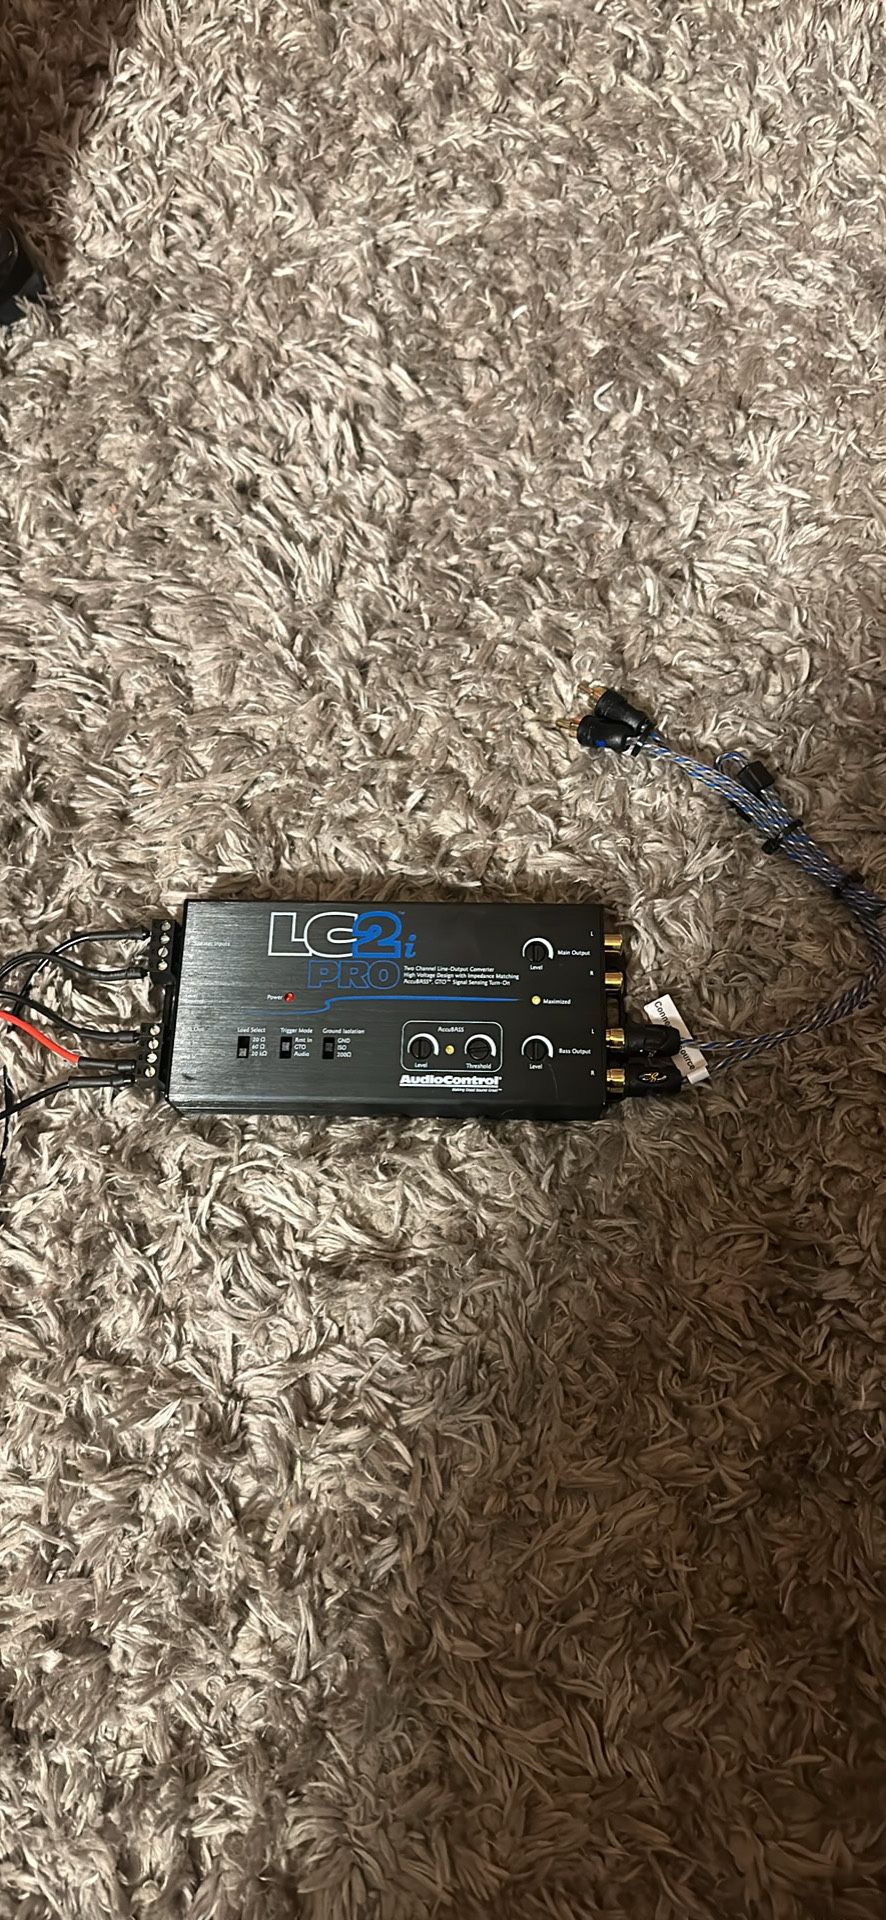 Lc2i Pro Audio Controller 